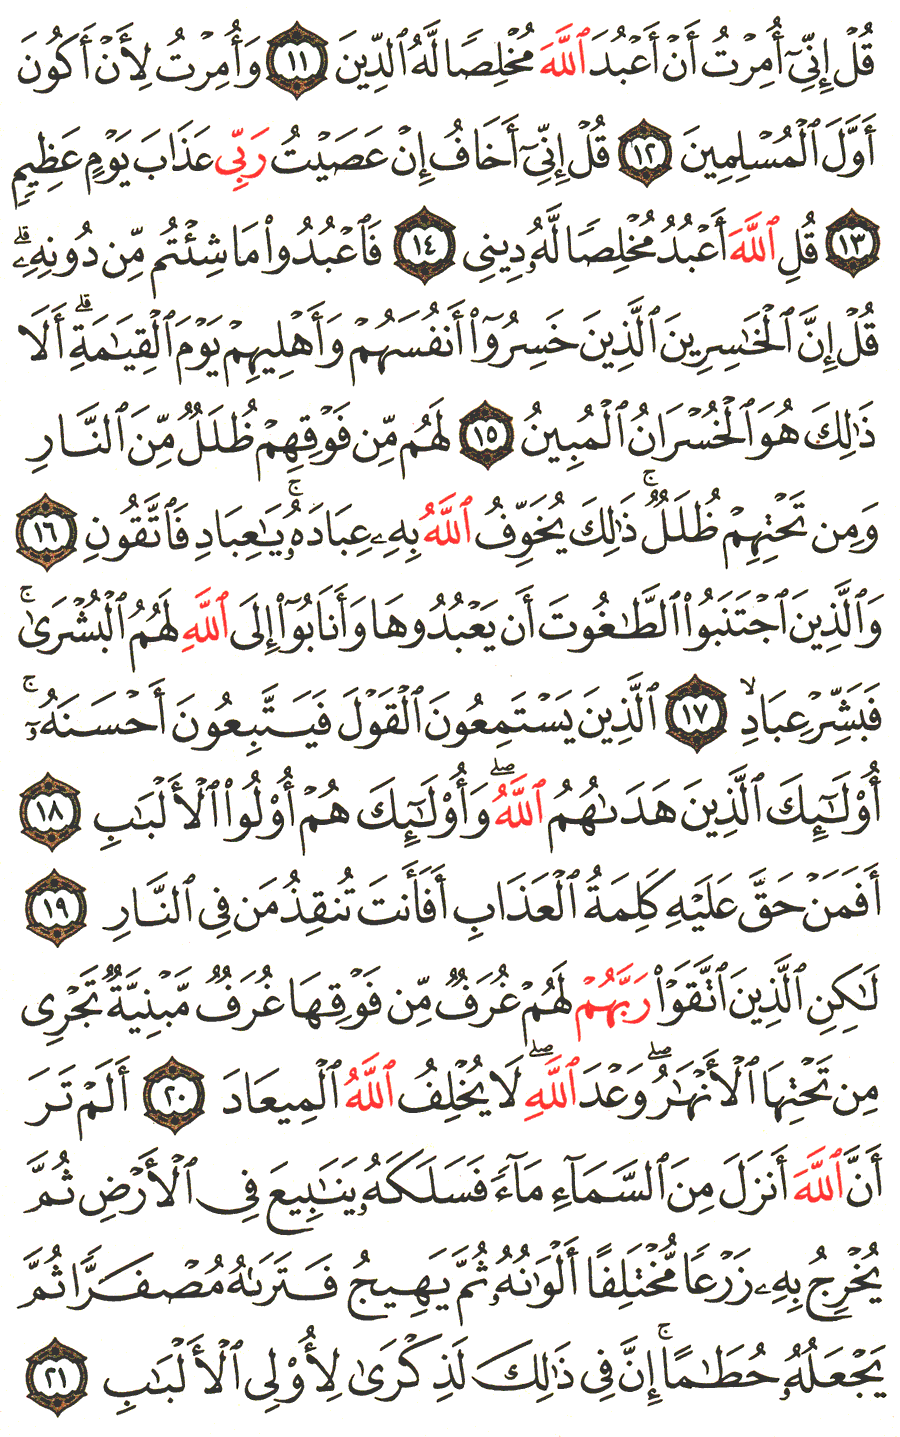 الصفحة 460 من القرآن الكريم